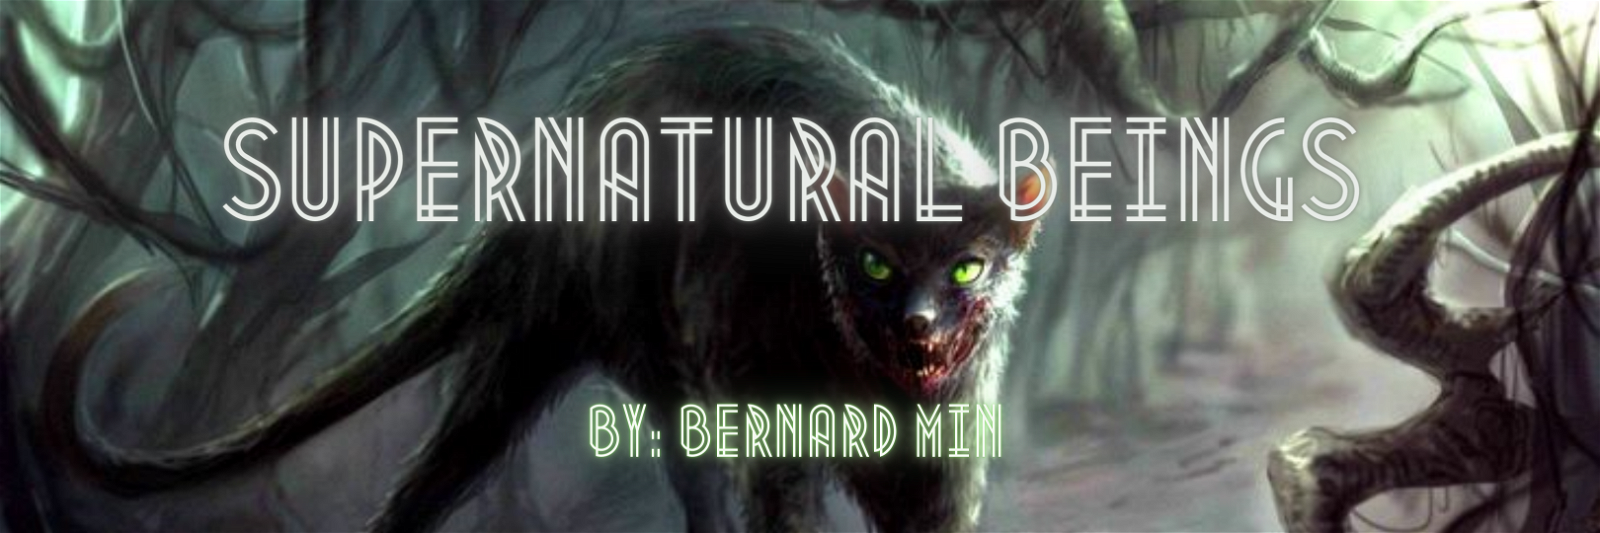 Supernatural Beings by Bernard #8